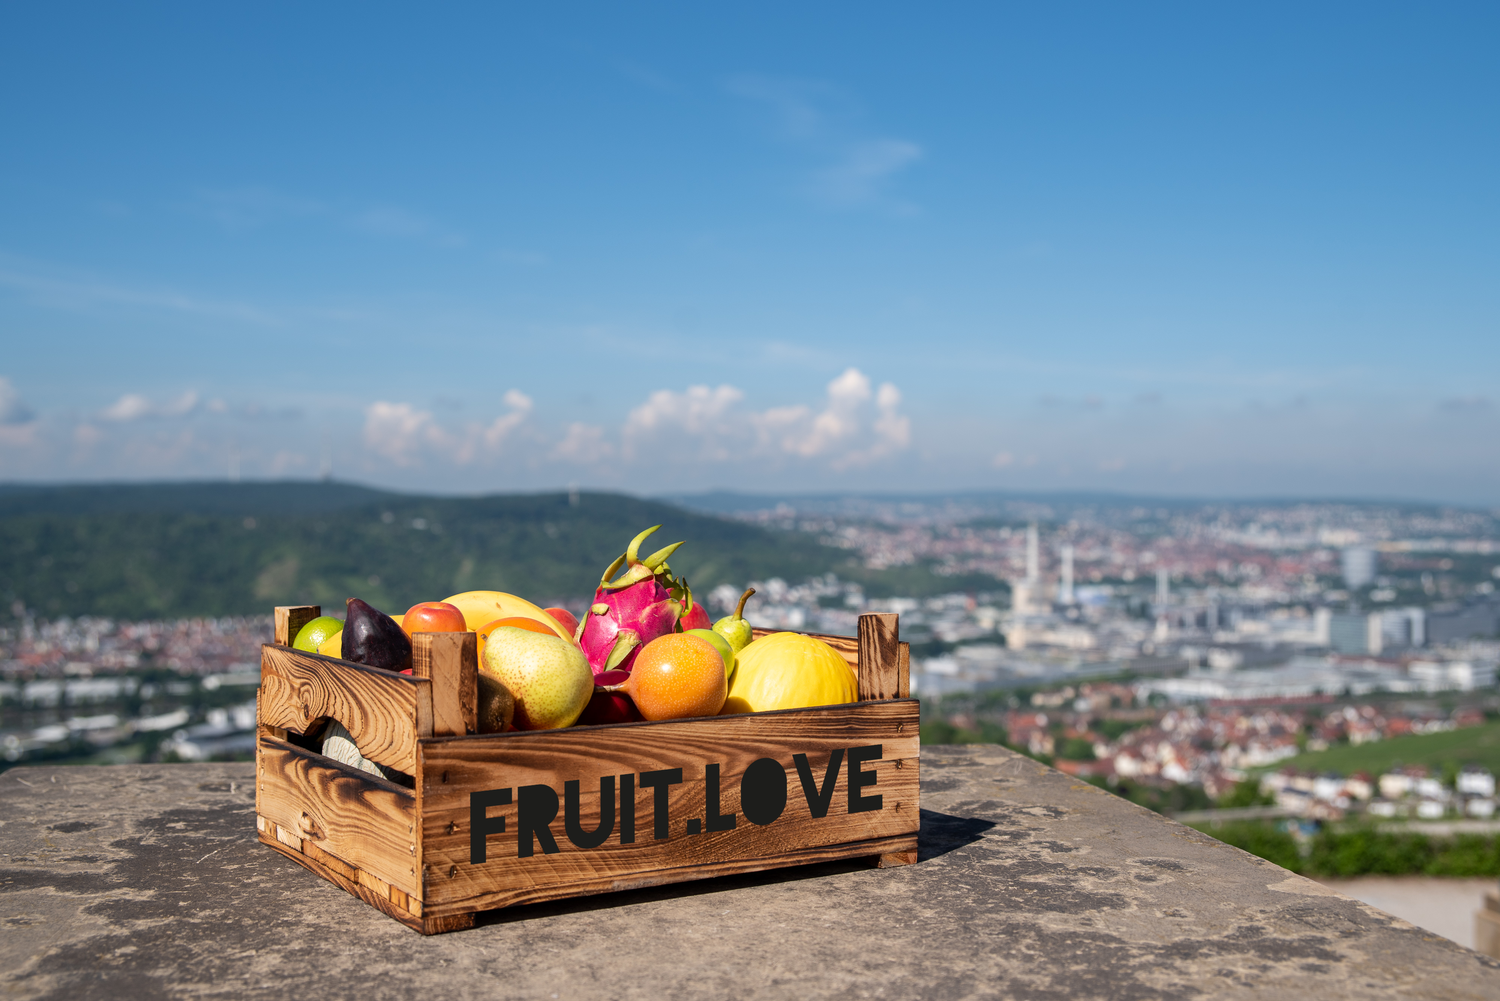 Fruit.Love liefert ihnen Obstkörbe für Unternehmen im flexiblen Frische-Abo in Stuttgart und Umgebung.
Lange Meetings. Zu wenig Zeit. Zu viele Aufgaben. Und zwischendurch auch noch gesund essen? Stress haben wir genug. Deshalb liefern wir dir alles direkt in dein Büro, deine Werkstatt, deine Ideenschmiede oder die Garage, in der gerade Großartiges entsteht. Wir sind für dich da. 
Unsere Fruit-Love Kiste enthält eine bunte, saisonale Auswahl an frischem Obst und exotischen Früchten.

Foodservice, Gemüsegrossmarkt, gemüsehandel, obsthandel, gemüse lieferservice, obst und gemüse lieferservice, obst und gemüse großhandel, gemüse grosshandel, bio gemüse lieferservice, obst großhandel, großhandel obst und gemüse, biogemüse in der nähe, obst gemüse großhandel, kartoffeln großhandel, kartoffeln grosshandel, gemüse großmarkt, bio obst und gemüse in der nähe, großhandel gemüse, obst gemüse lieferservice, gemüselieferung, gemüse direkt vom bauern, feinkost, exotische früchte, feinkost ab rampe, feinkost großhandel, feinkostgroßhandel, feinkost rampe, feinkosthandel, feinkost großhandel für wiederverkäufer, feinkost lieferservice